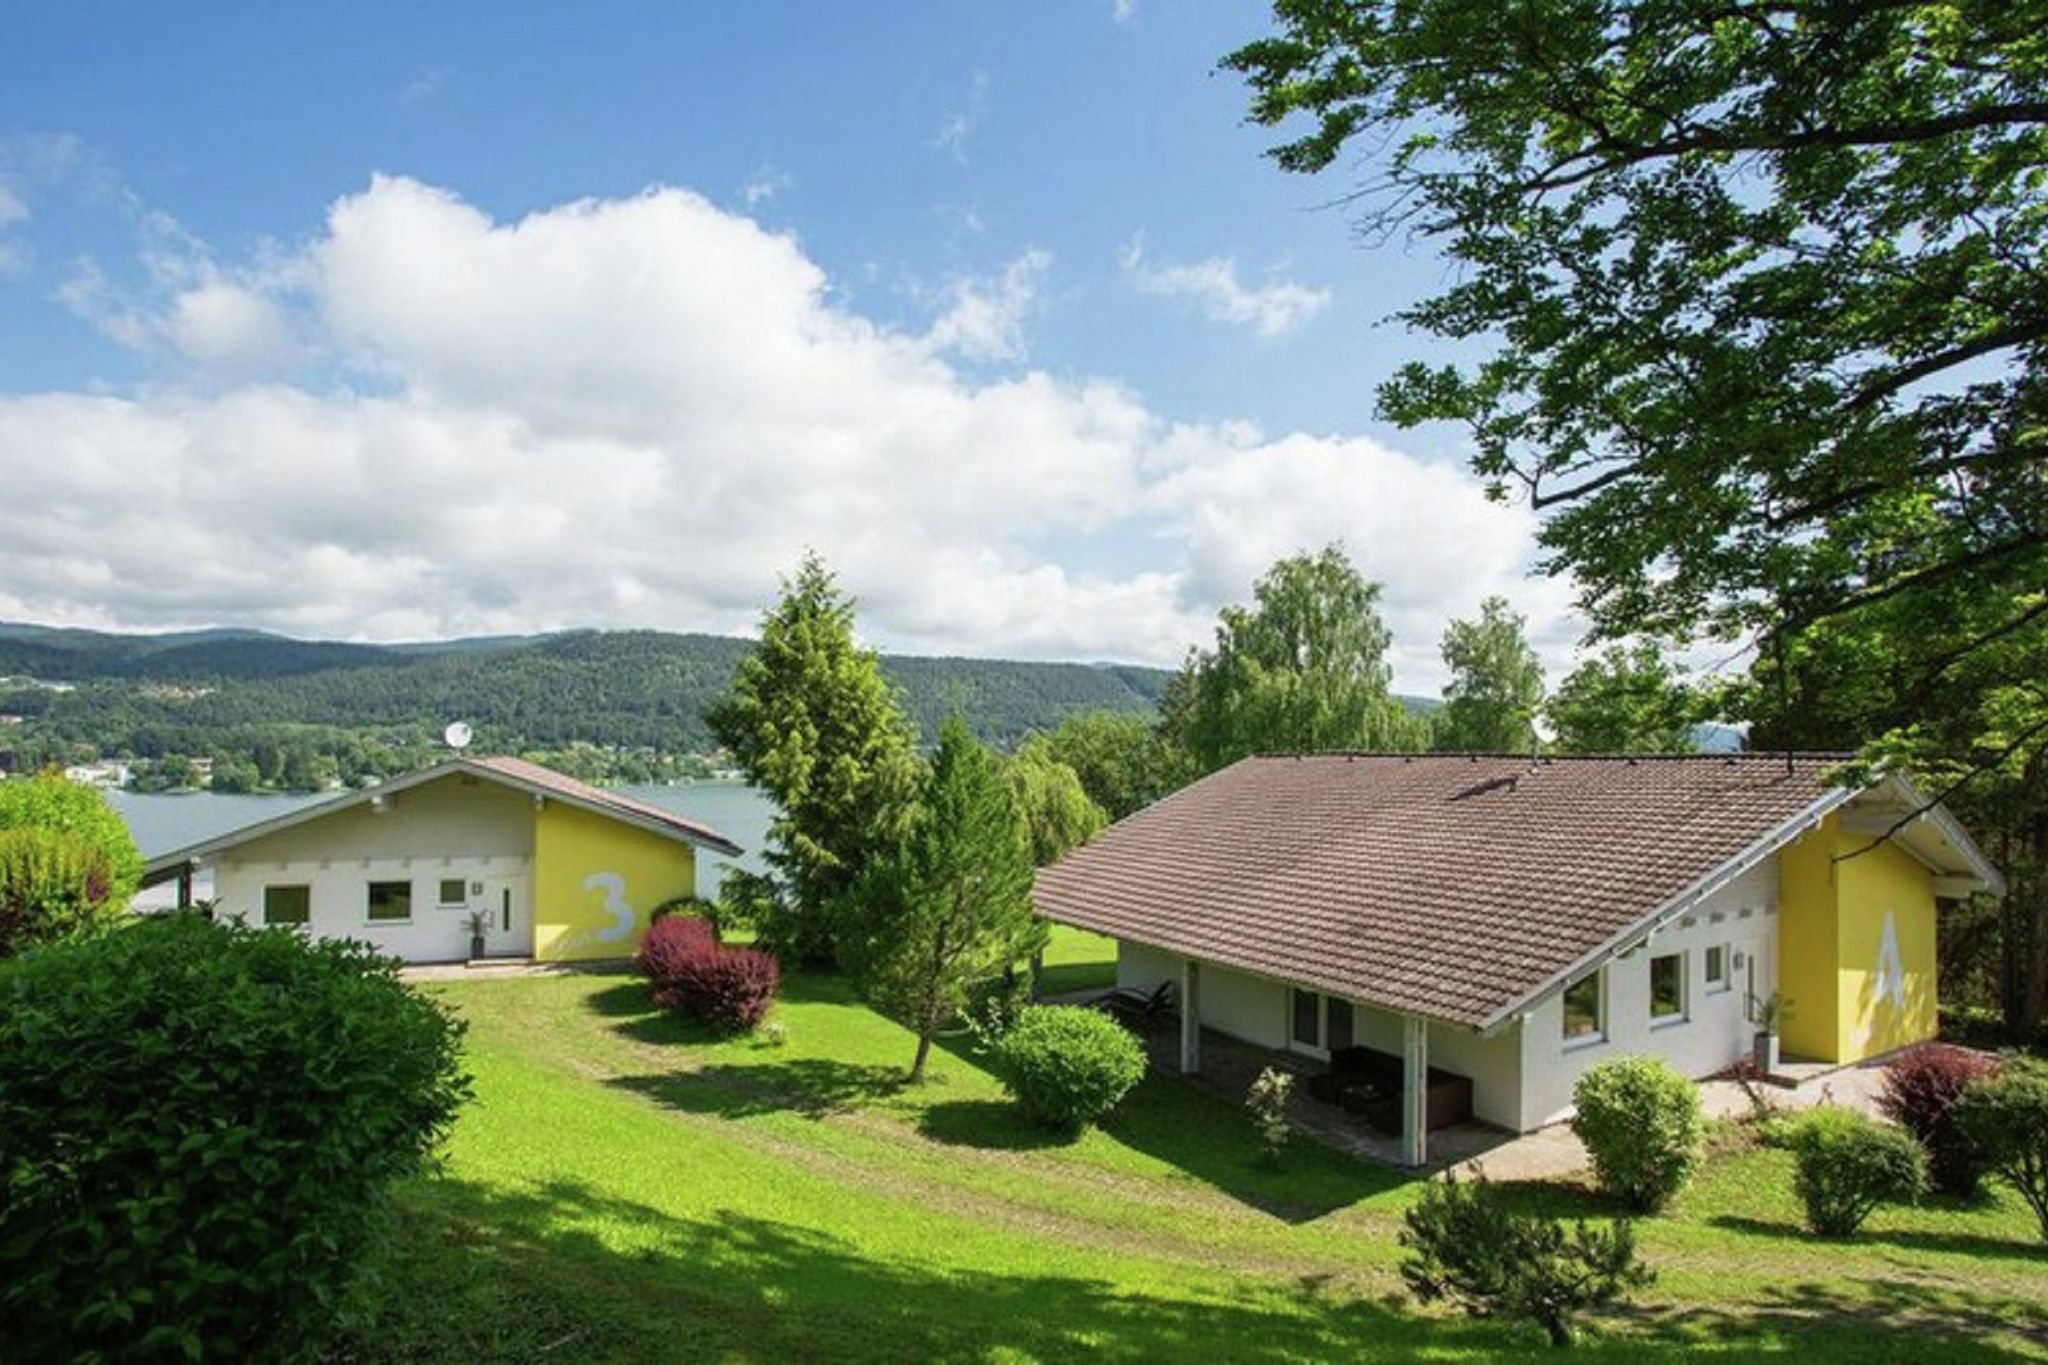 Luxe villa in Karinthië met aanlegsteiger en overdekt terras